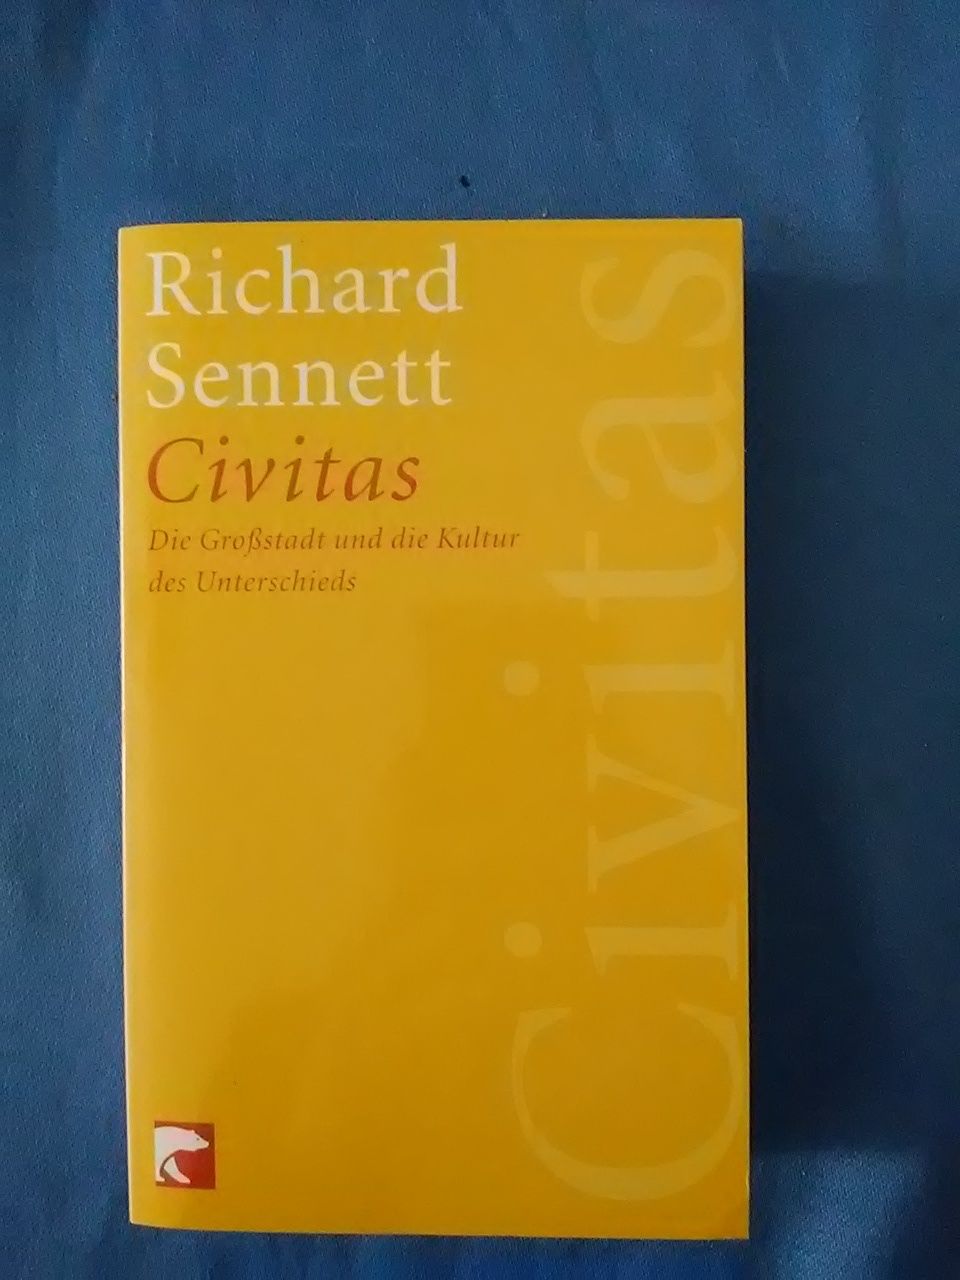 Civitas : die Großstadt und die Kultur des Unterschieds. Richard Sennett. Aus dem Amerikan. von Reinhard Kaiser / BvT ; 622 - Sennett, Richard und Reinhard. Kaiser